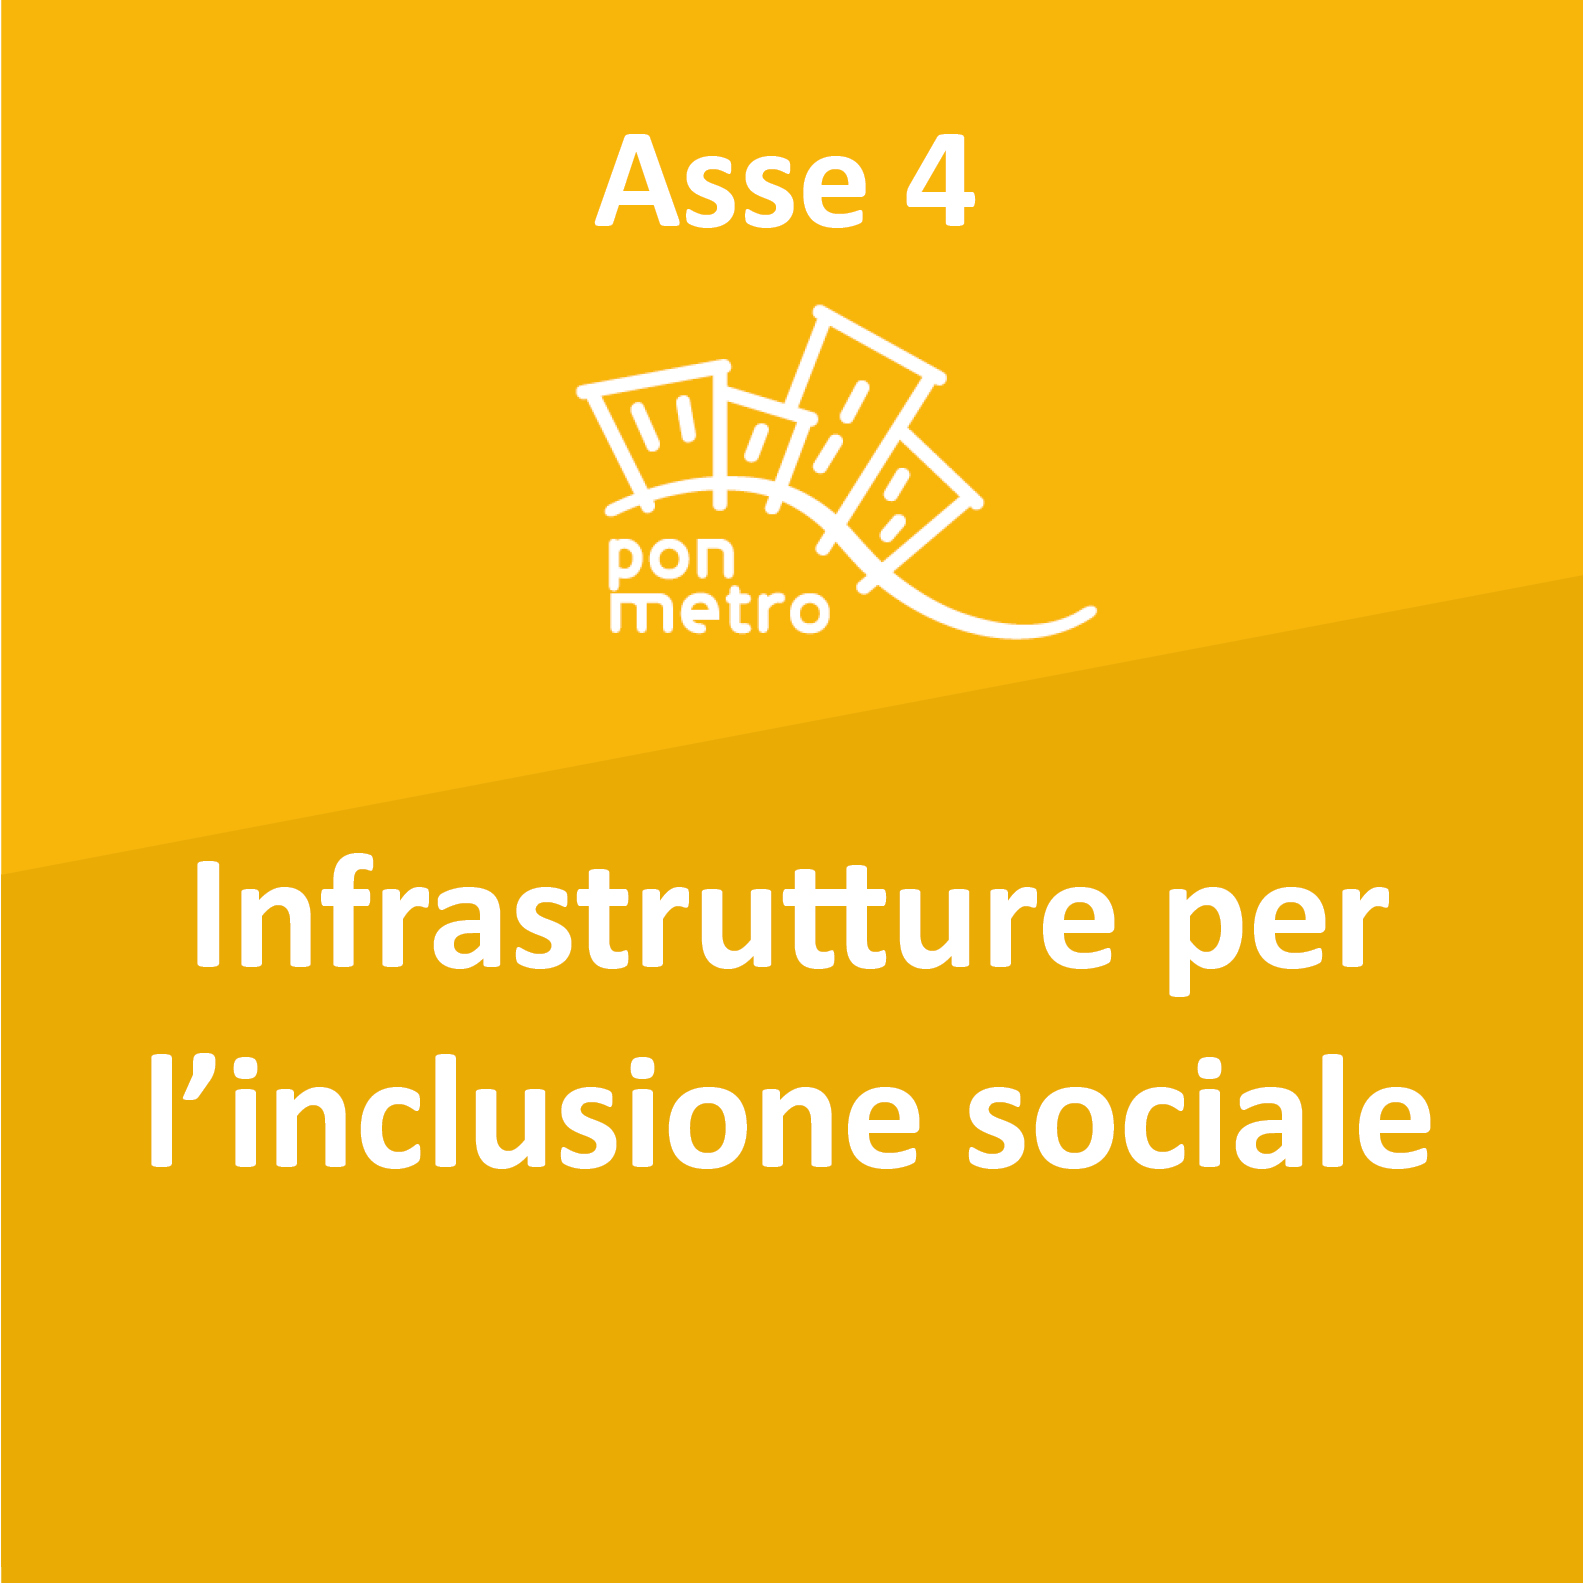 infrastrutture per l'inclusione sociale